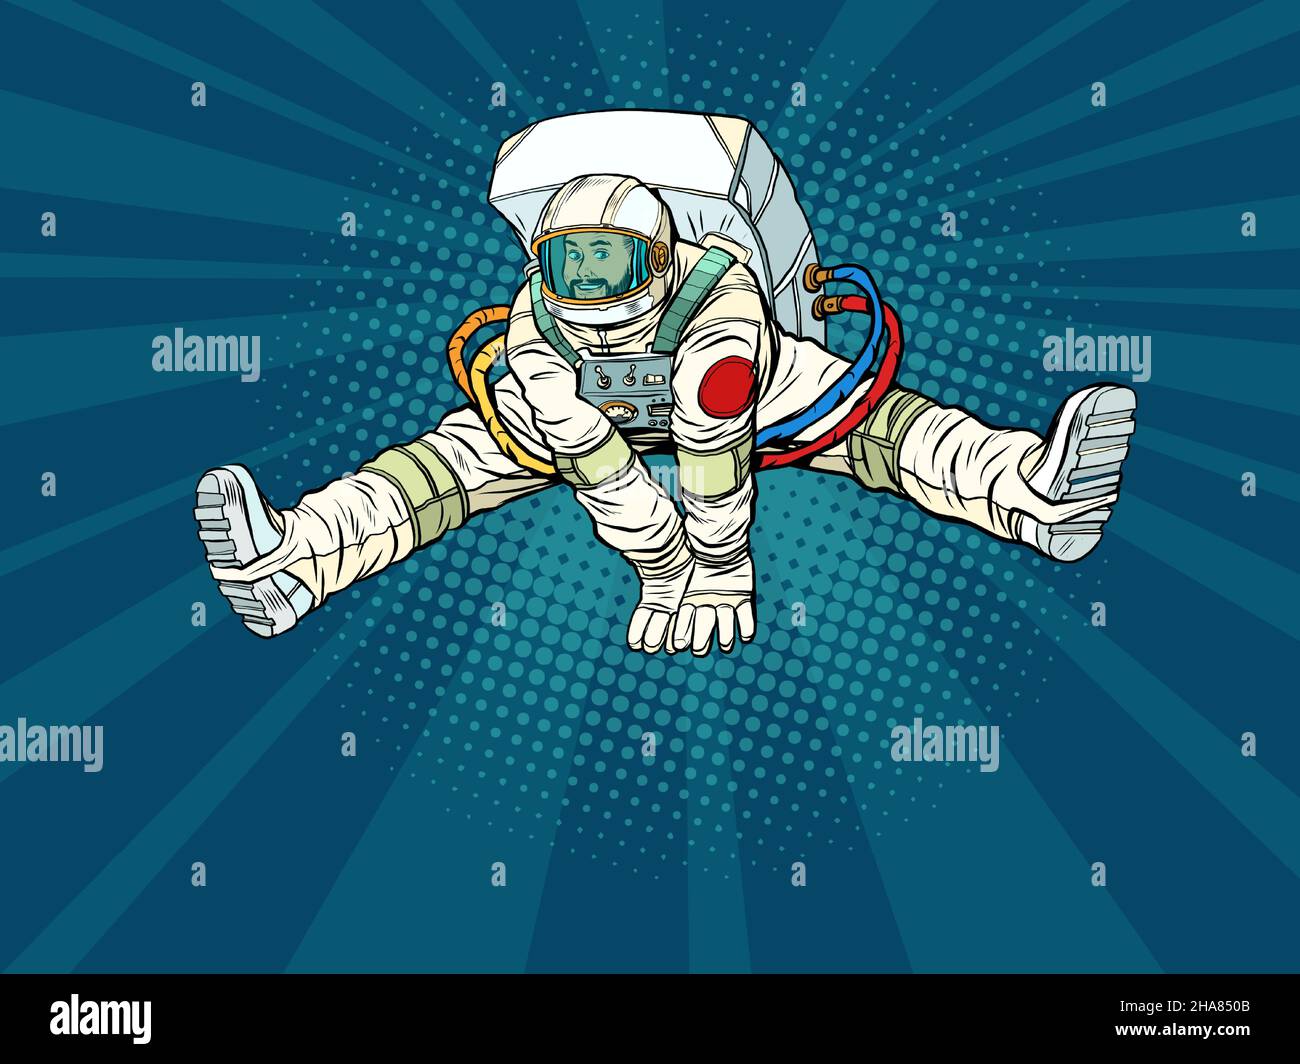 Der Astronaut freut sich, in einer lustigen Pose mit auseinander stehenden Beinen hochspringen zu können. Raumfahrt und Wissenschaft Stock Vektor